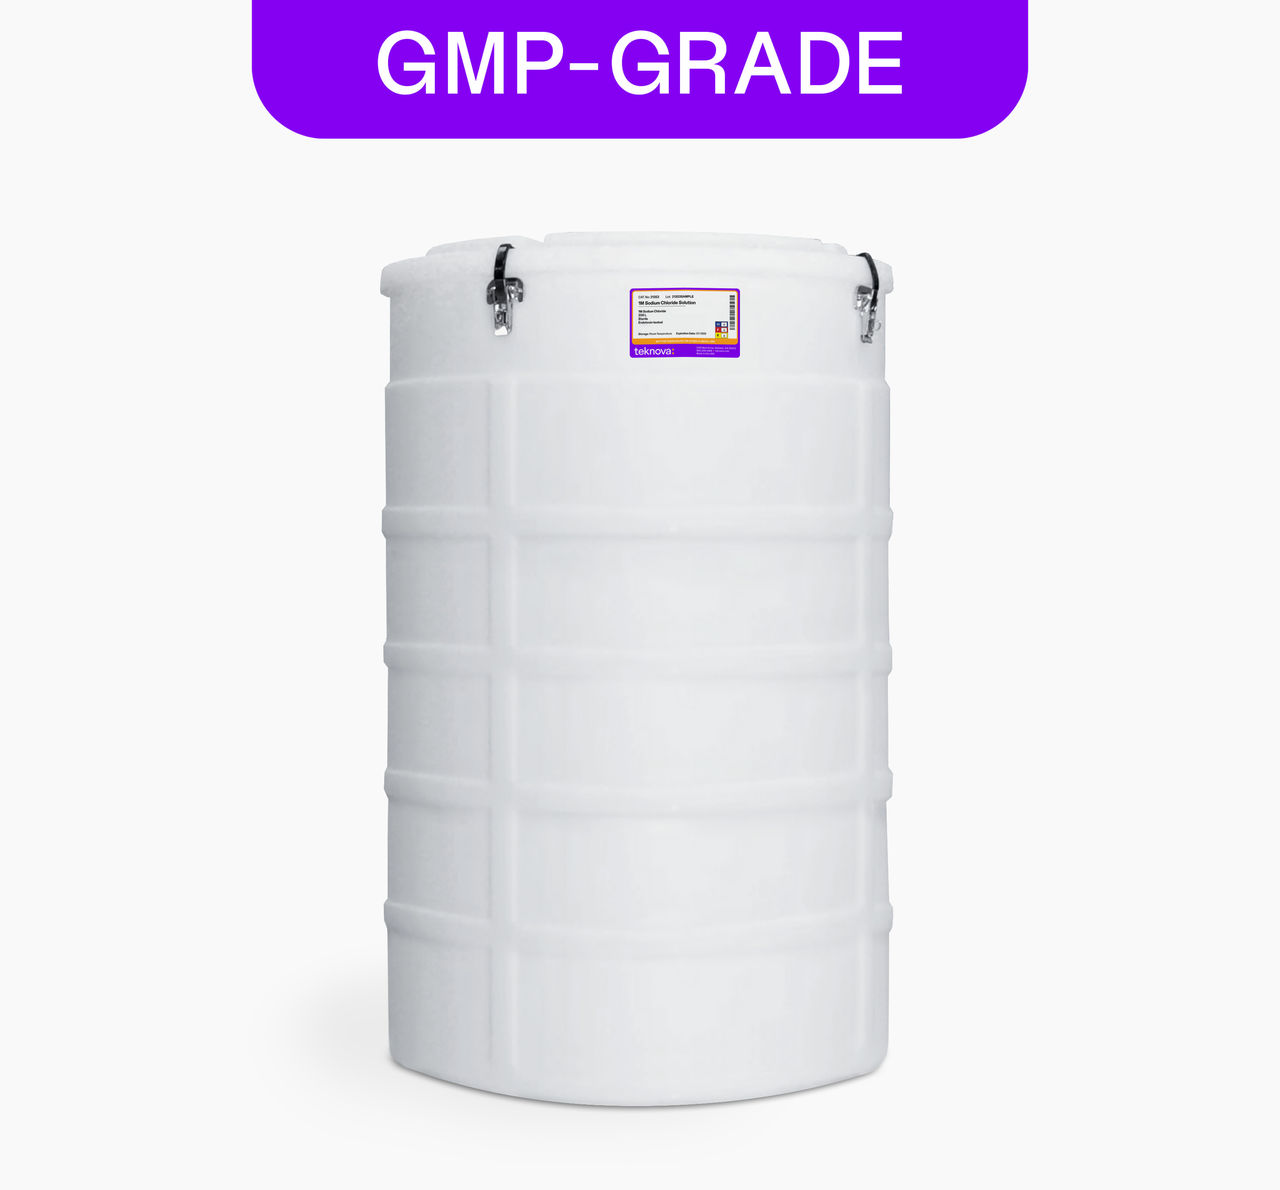 1M Sodium Chloride Solution, 200L bag, GMP-grade